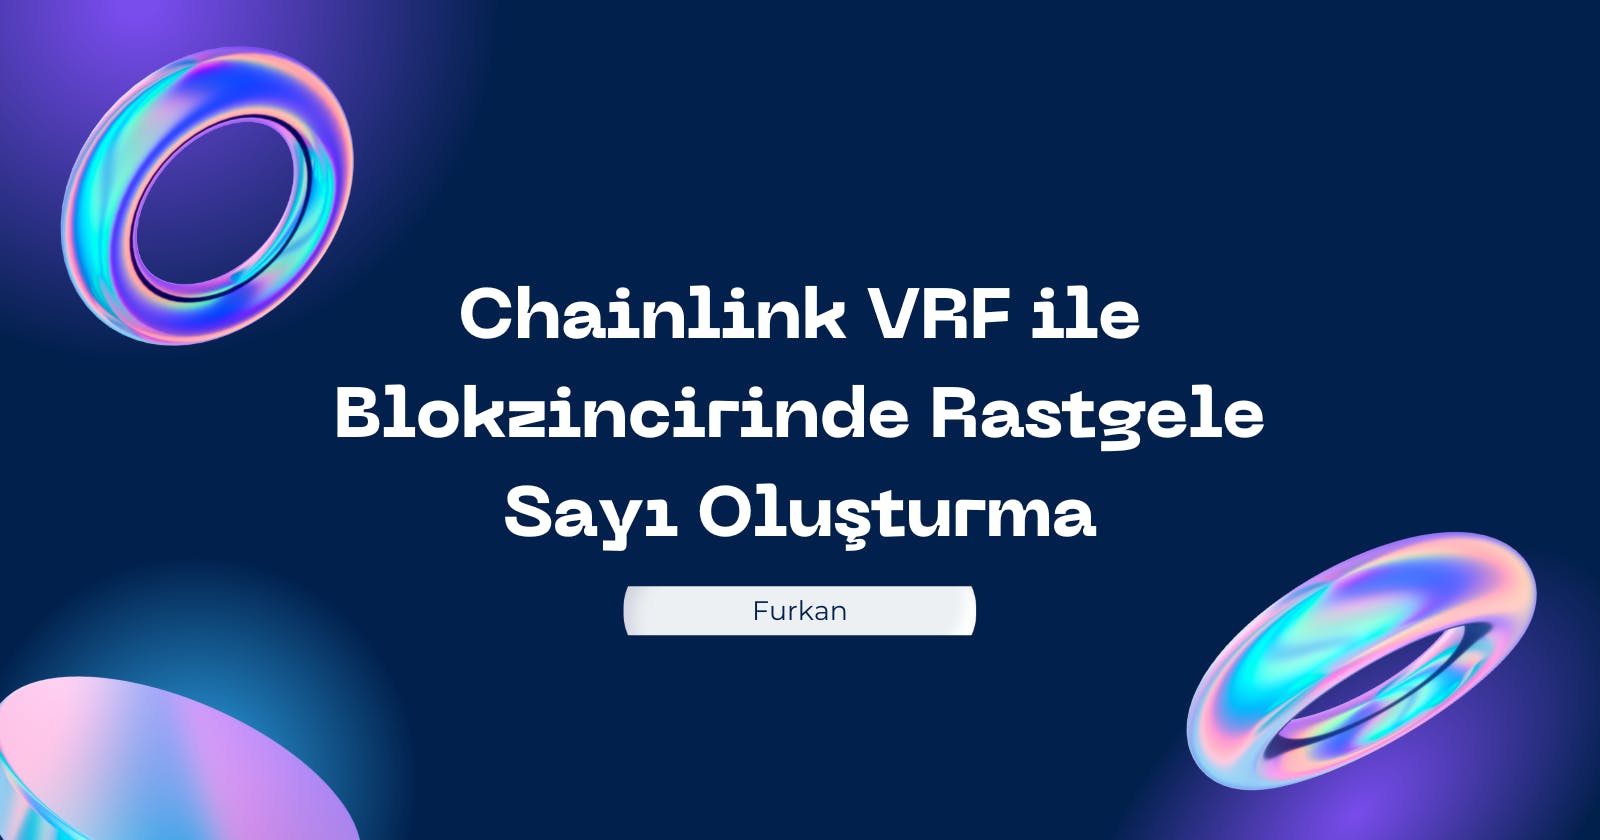 Chainlink VRF ile Blokzincirinde Rastgele Sayı Oluşturma